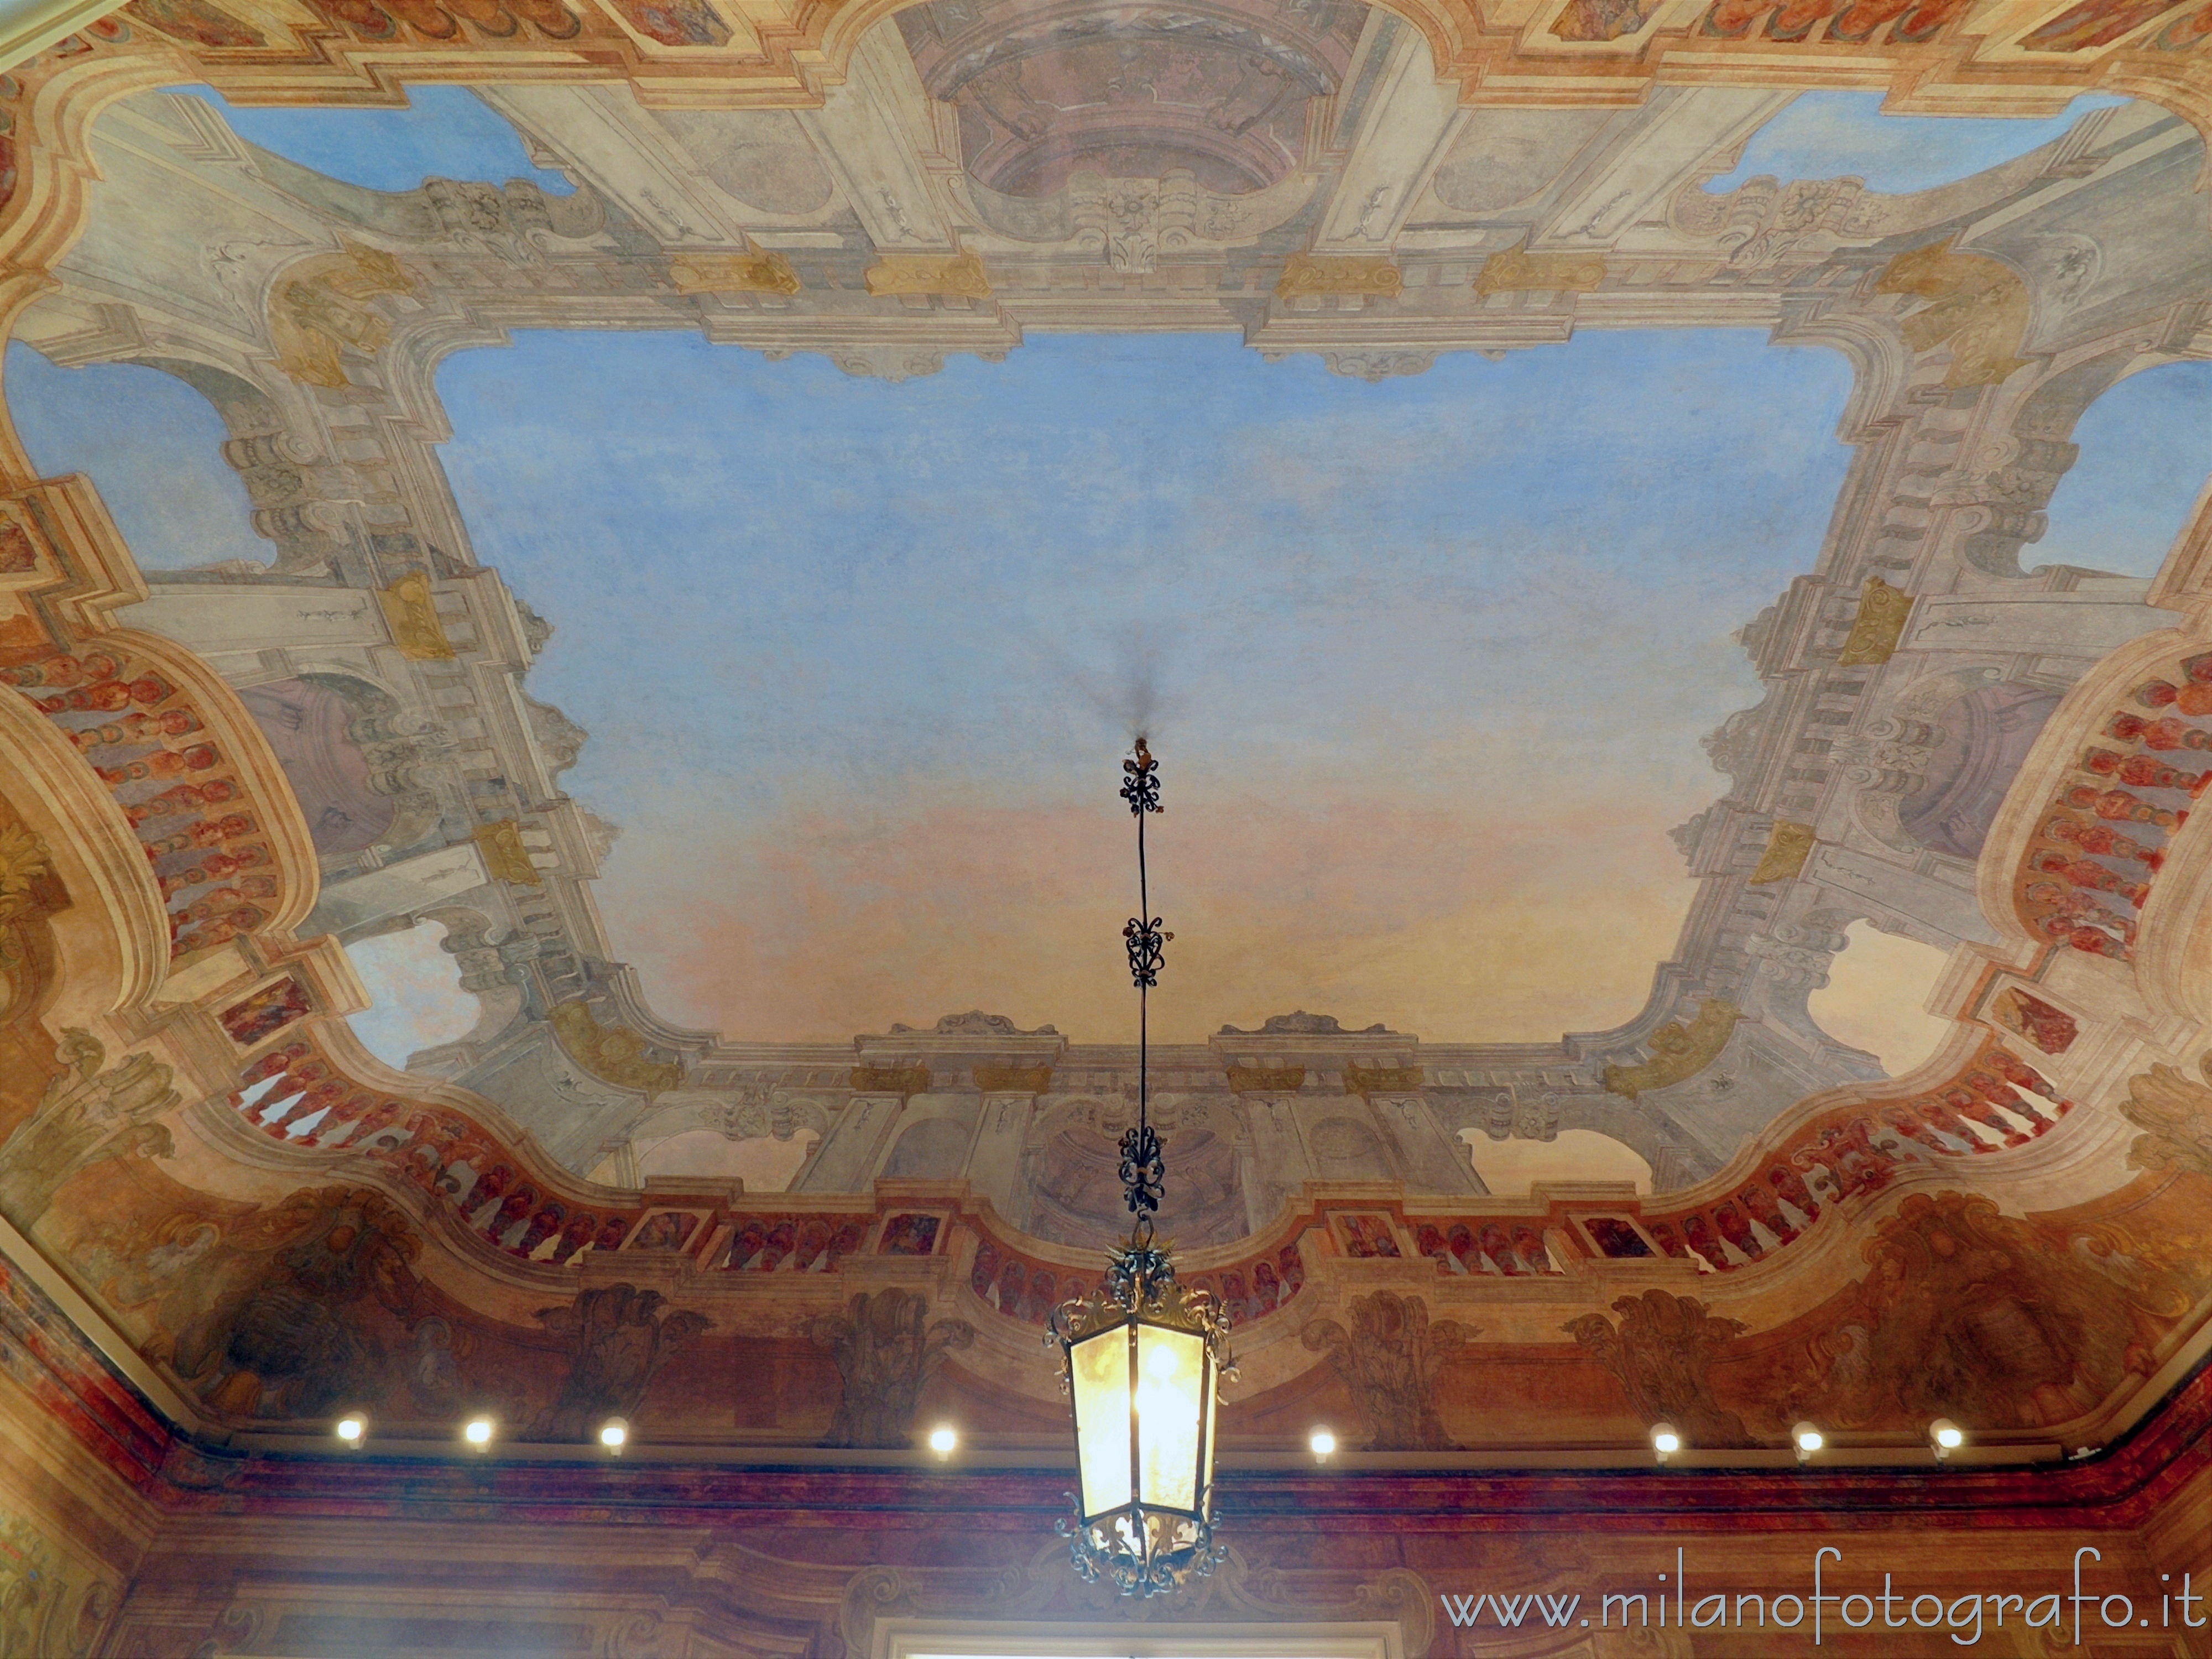 Arcore (Monza e Brianza, Italy): Ceiling of the trompe-l’œil hall of Villa Borromeo d'Adda - Arcore (Monza e Brianza, Italy)